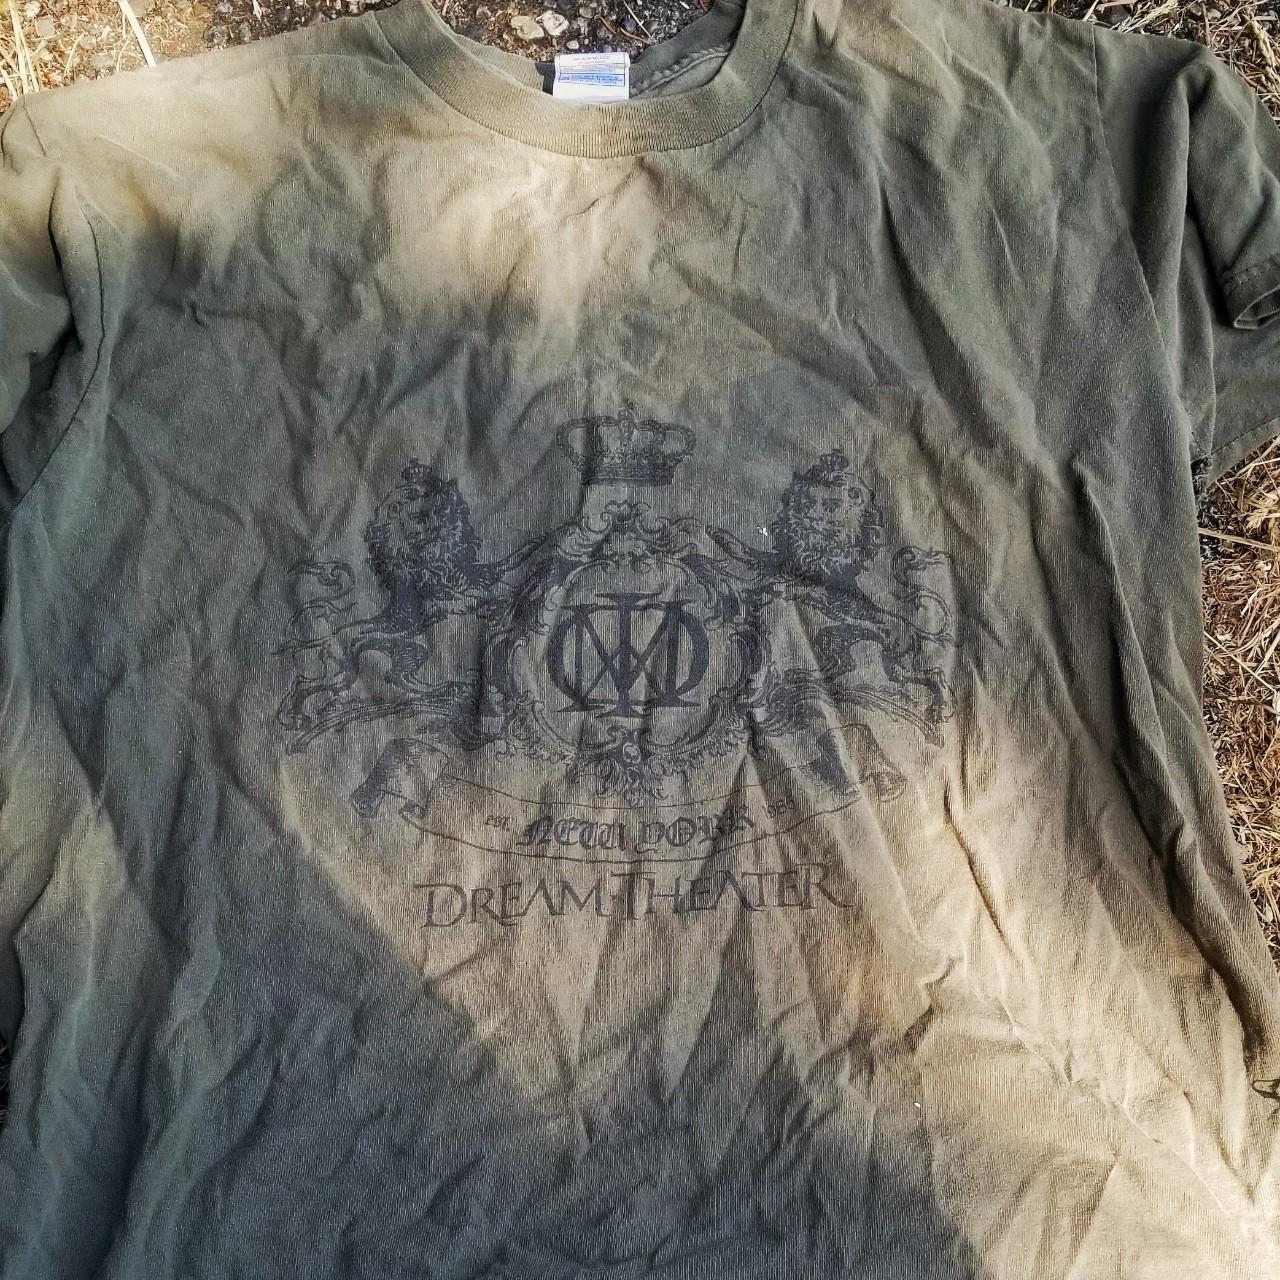 New York Sucks' Men's T-Shirt